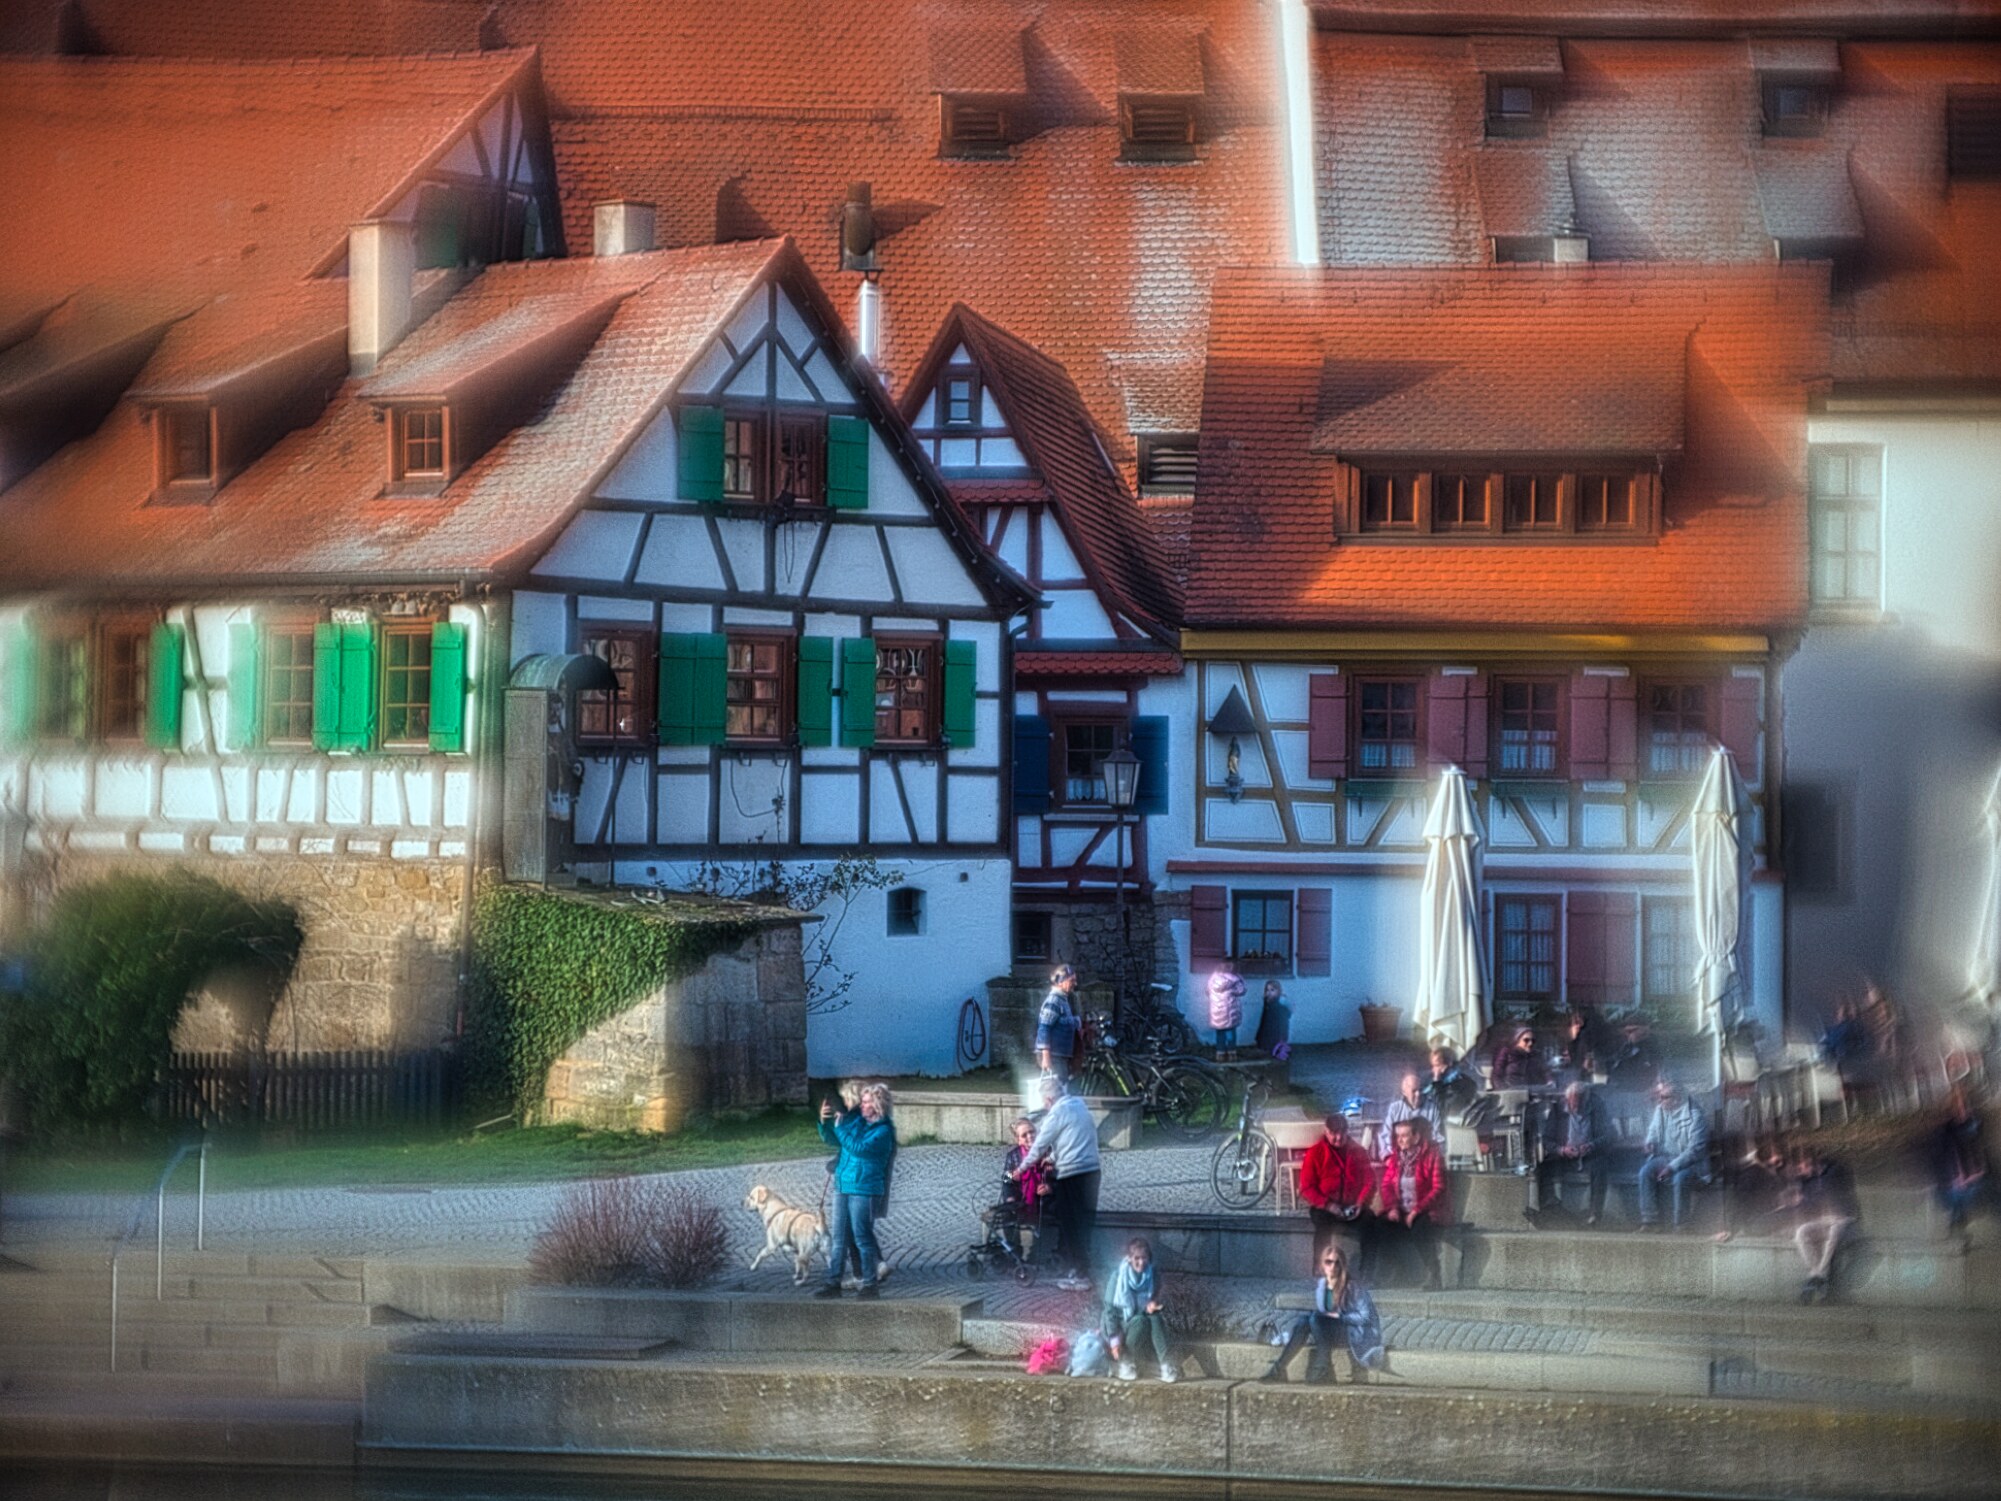 Mit dem #205 in Rottenburg am Neckar #1 — Miniatureffekt